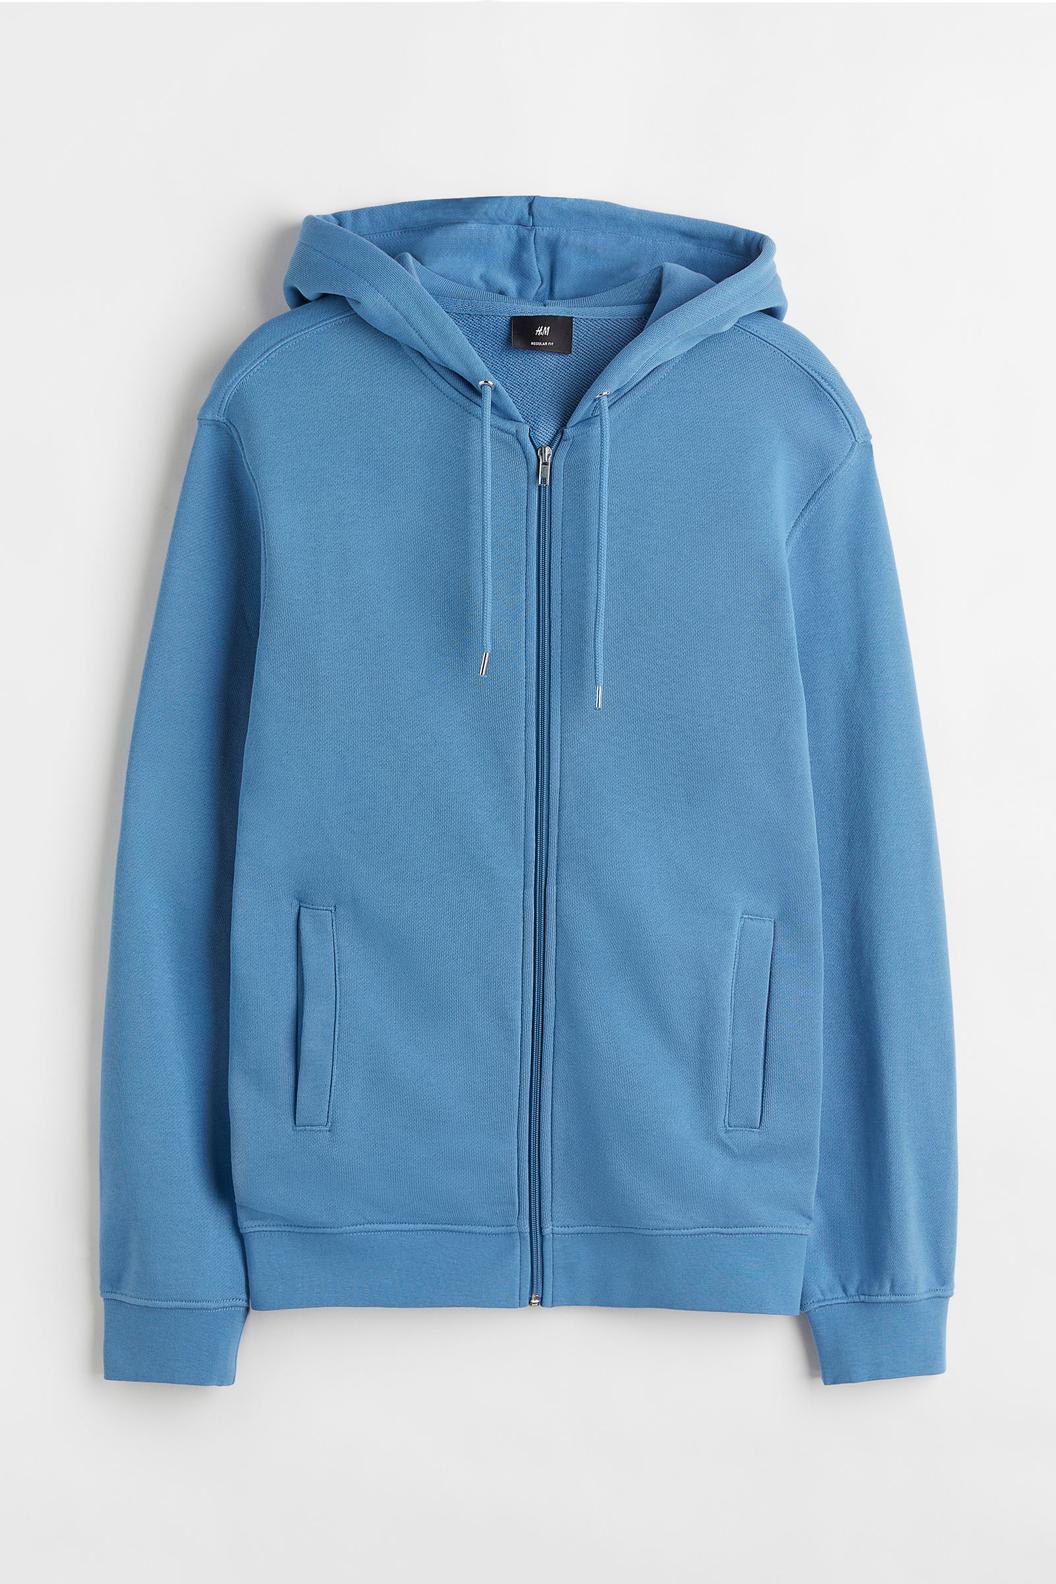 Oferta de Polerón hoodie con cierre Regular Fit por $9495 en H&M